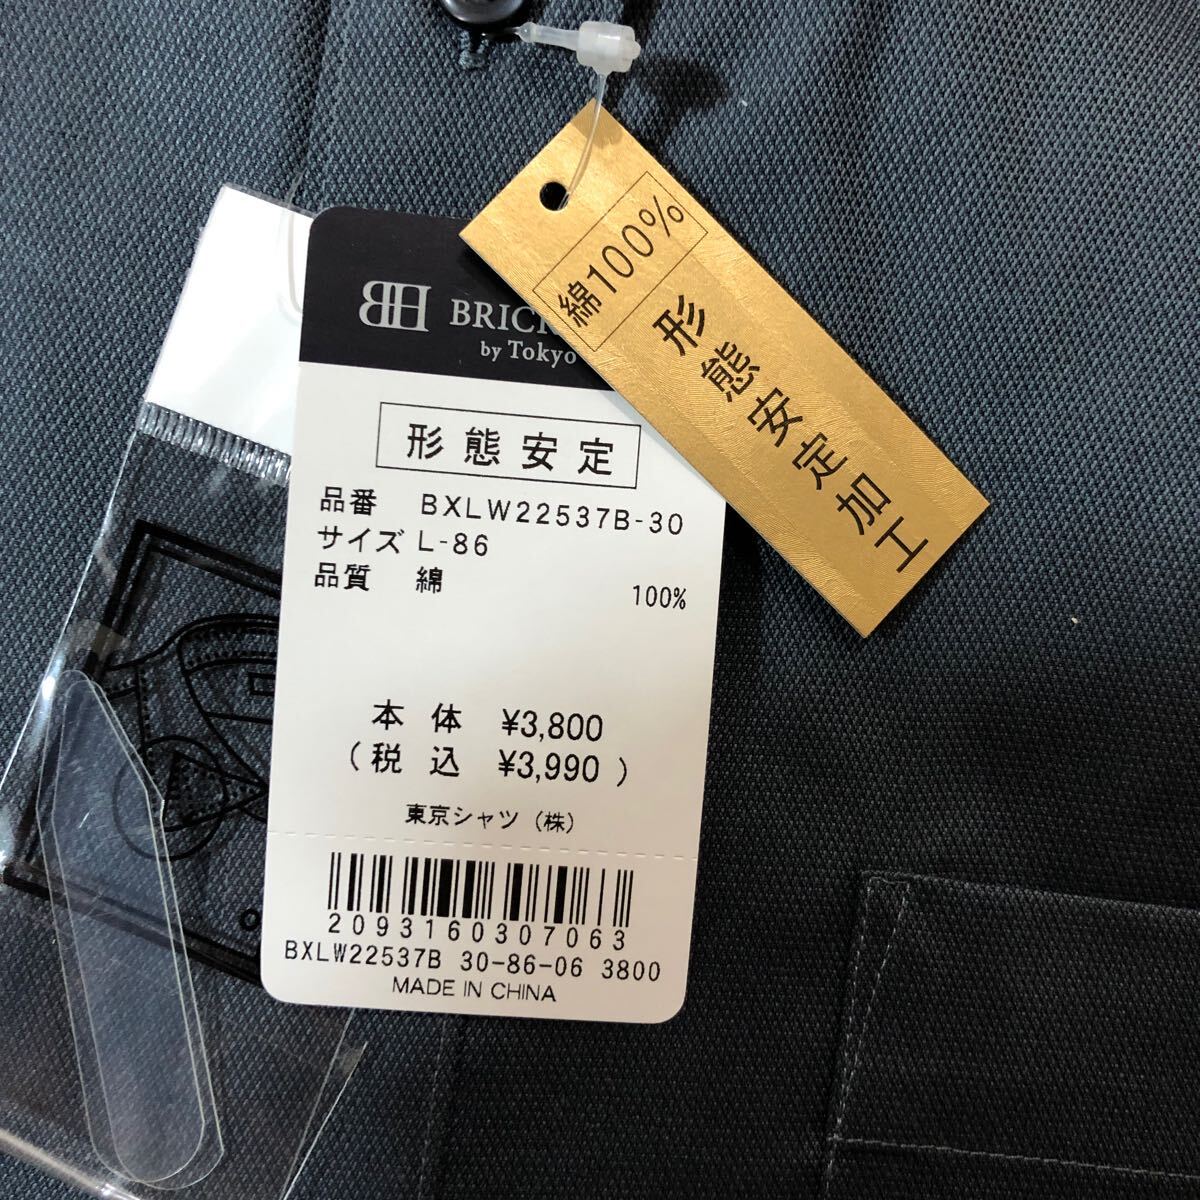 BRICK HOUSE Tokyo shirts ブリックハウス 東京シャツ ワイシャツ 100パーコットン L-86 新品 未使用品の画像2